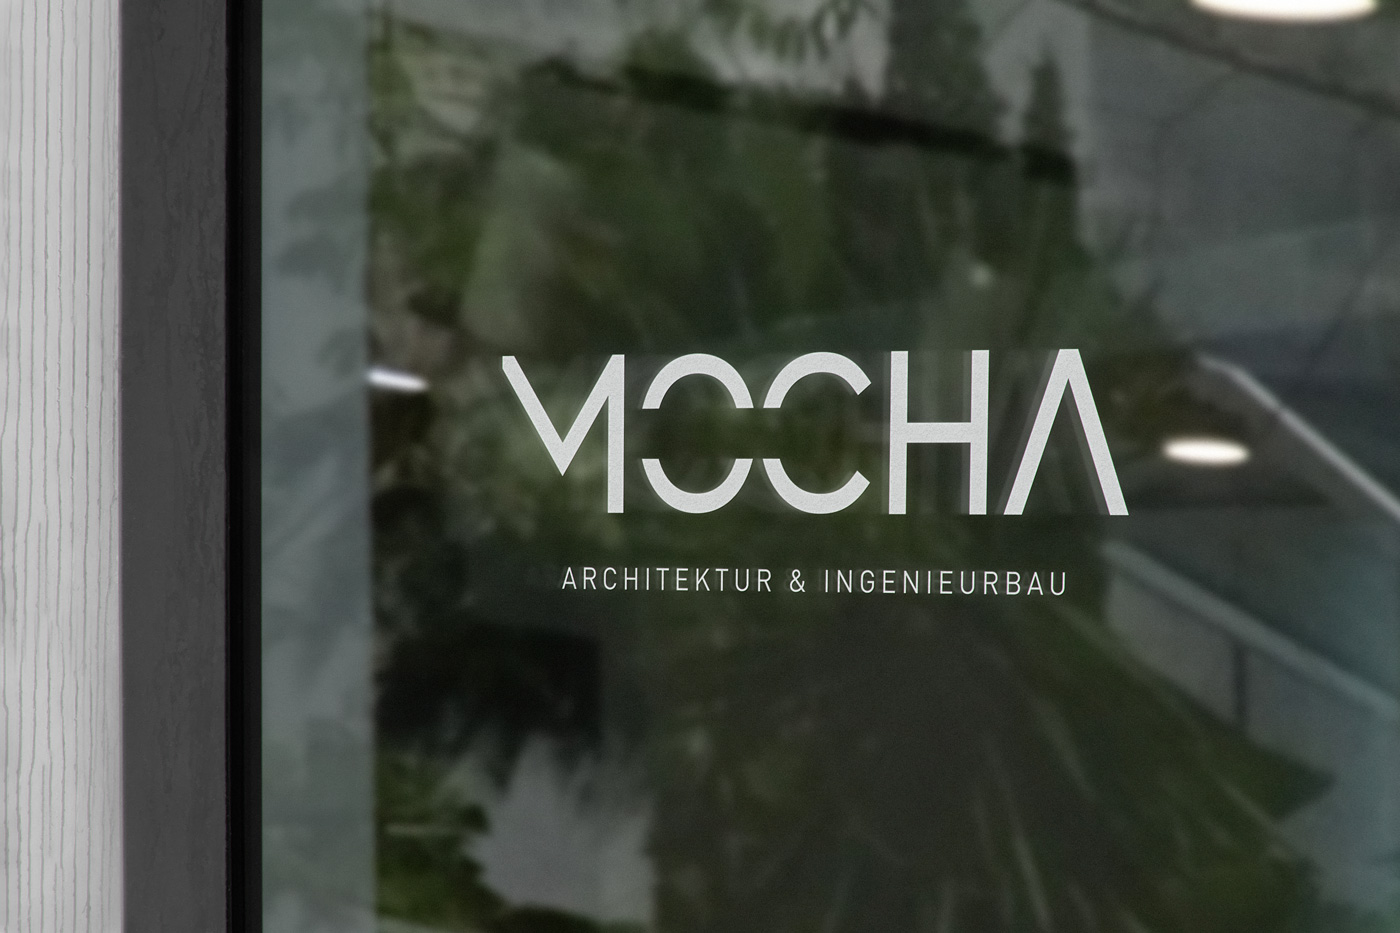 Mocha Architektur- & Ingenieurebüro – Ansicht Fensterbeklebung des Firmennamens